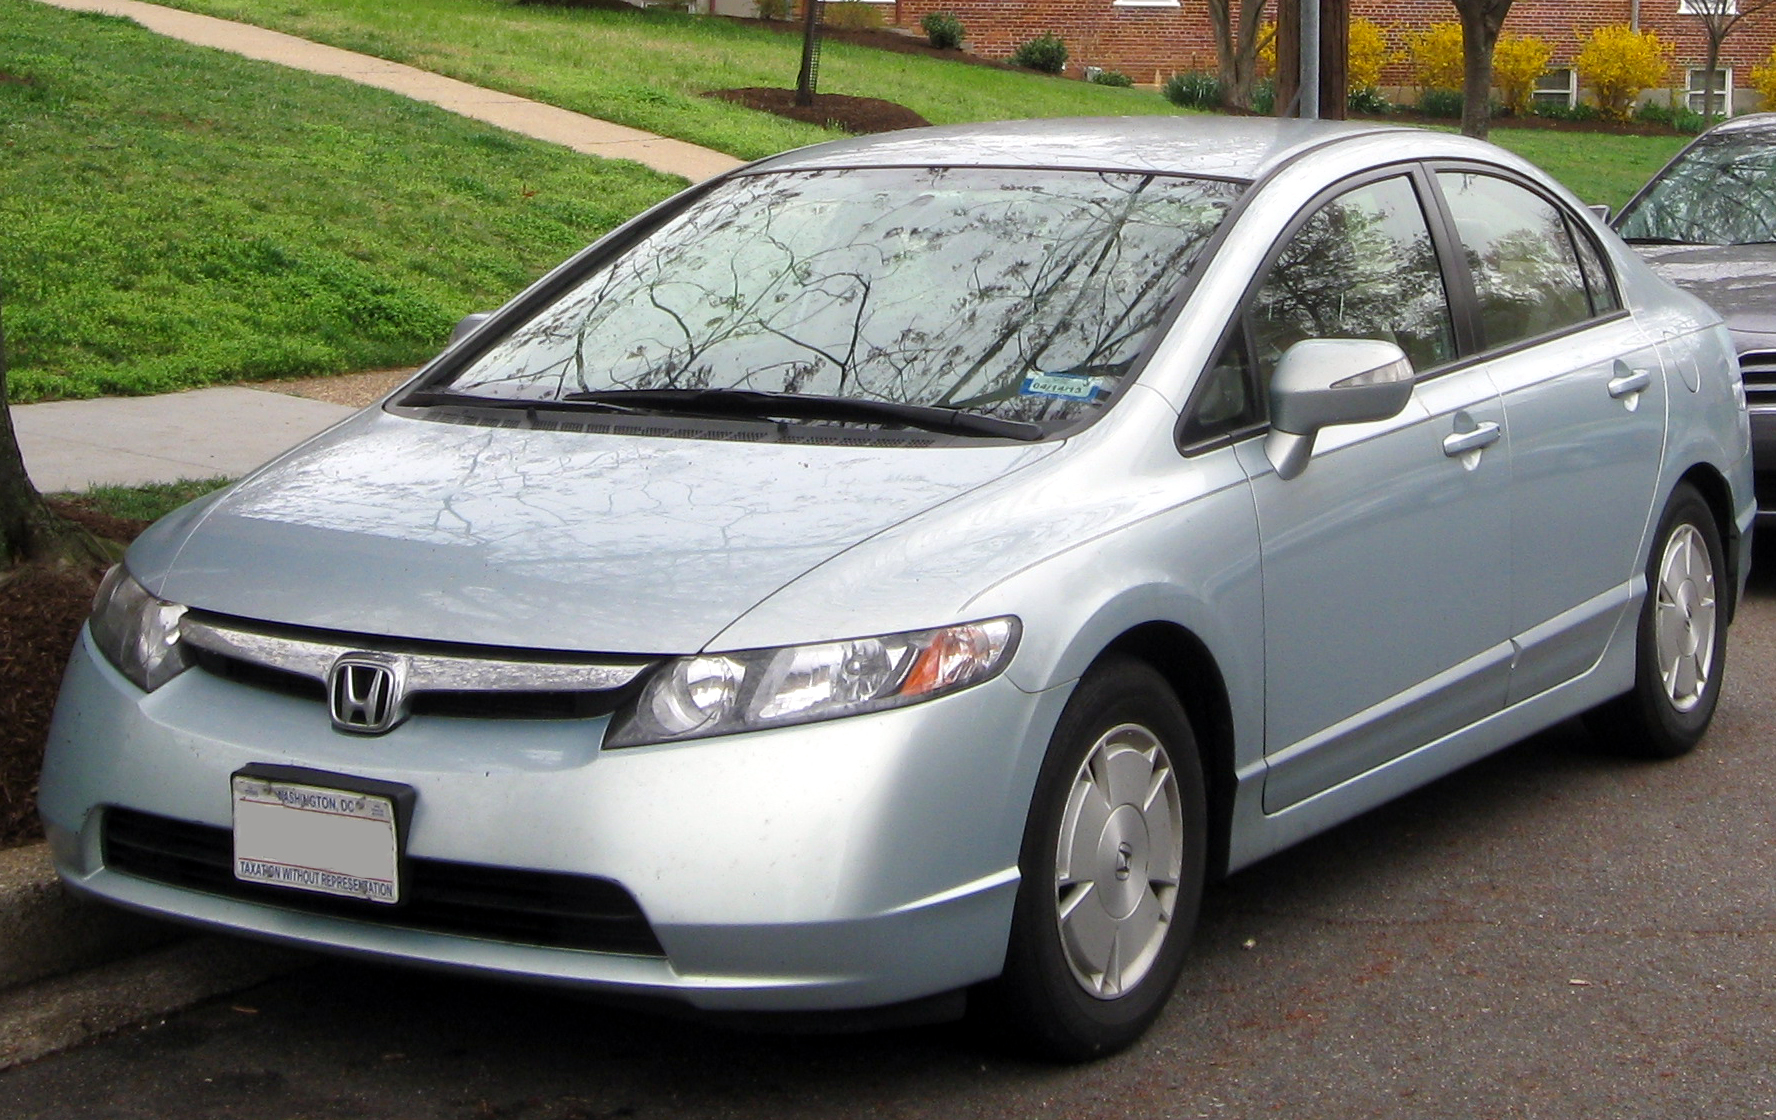 Гибрид 2006. Honda Civic Hybrid 2008. Honda Цивик 2008 гибрид. Honda Civic 2006 2008. Honda Civic Hybrid 2006.